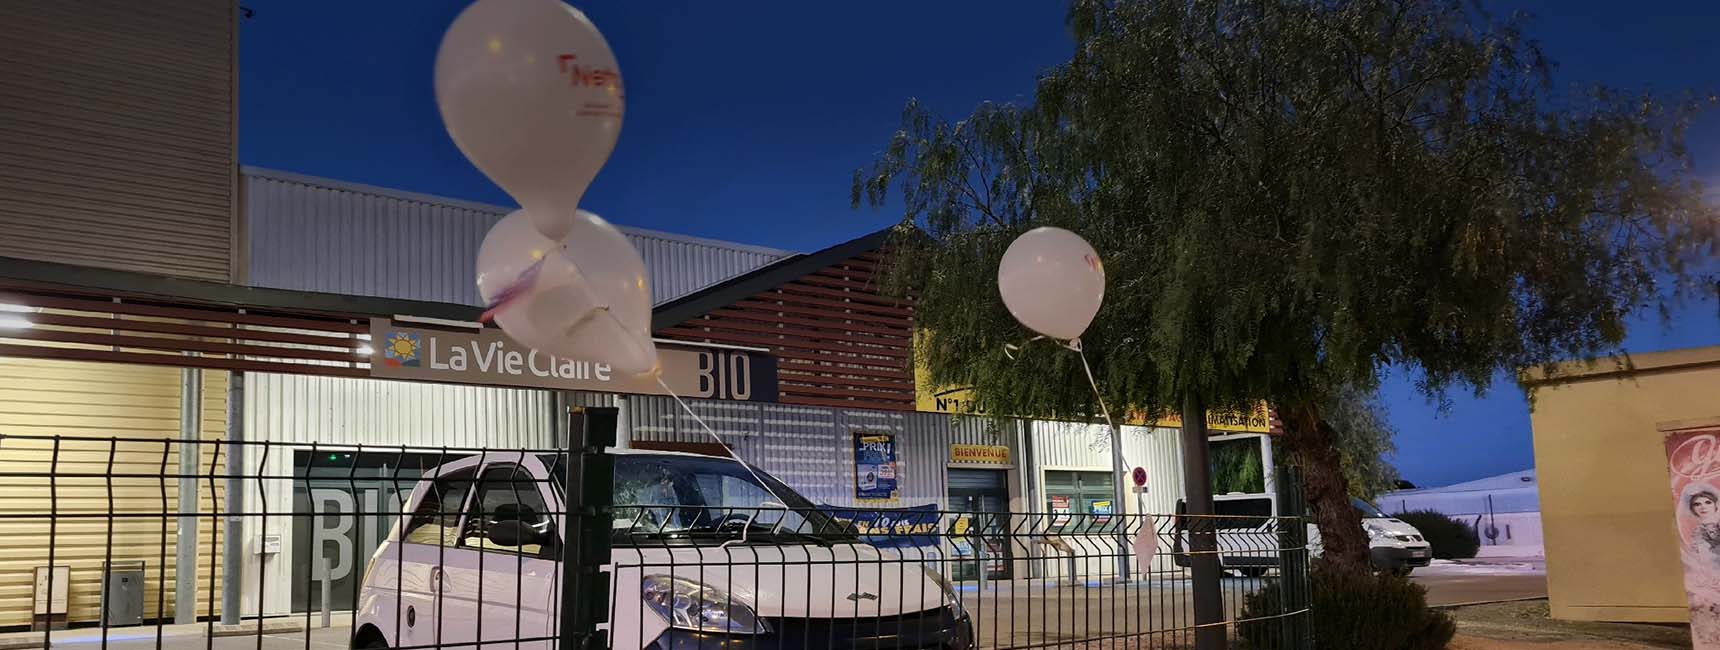 Guérilla Ballon Netto - Keemia Marseille agence de marketing local en région Paca